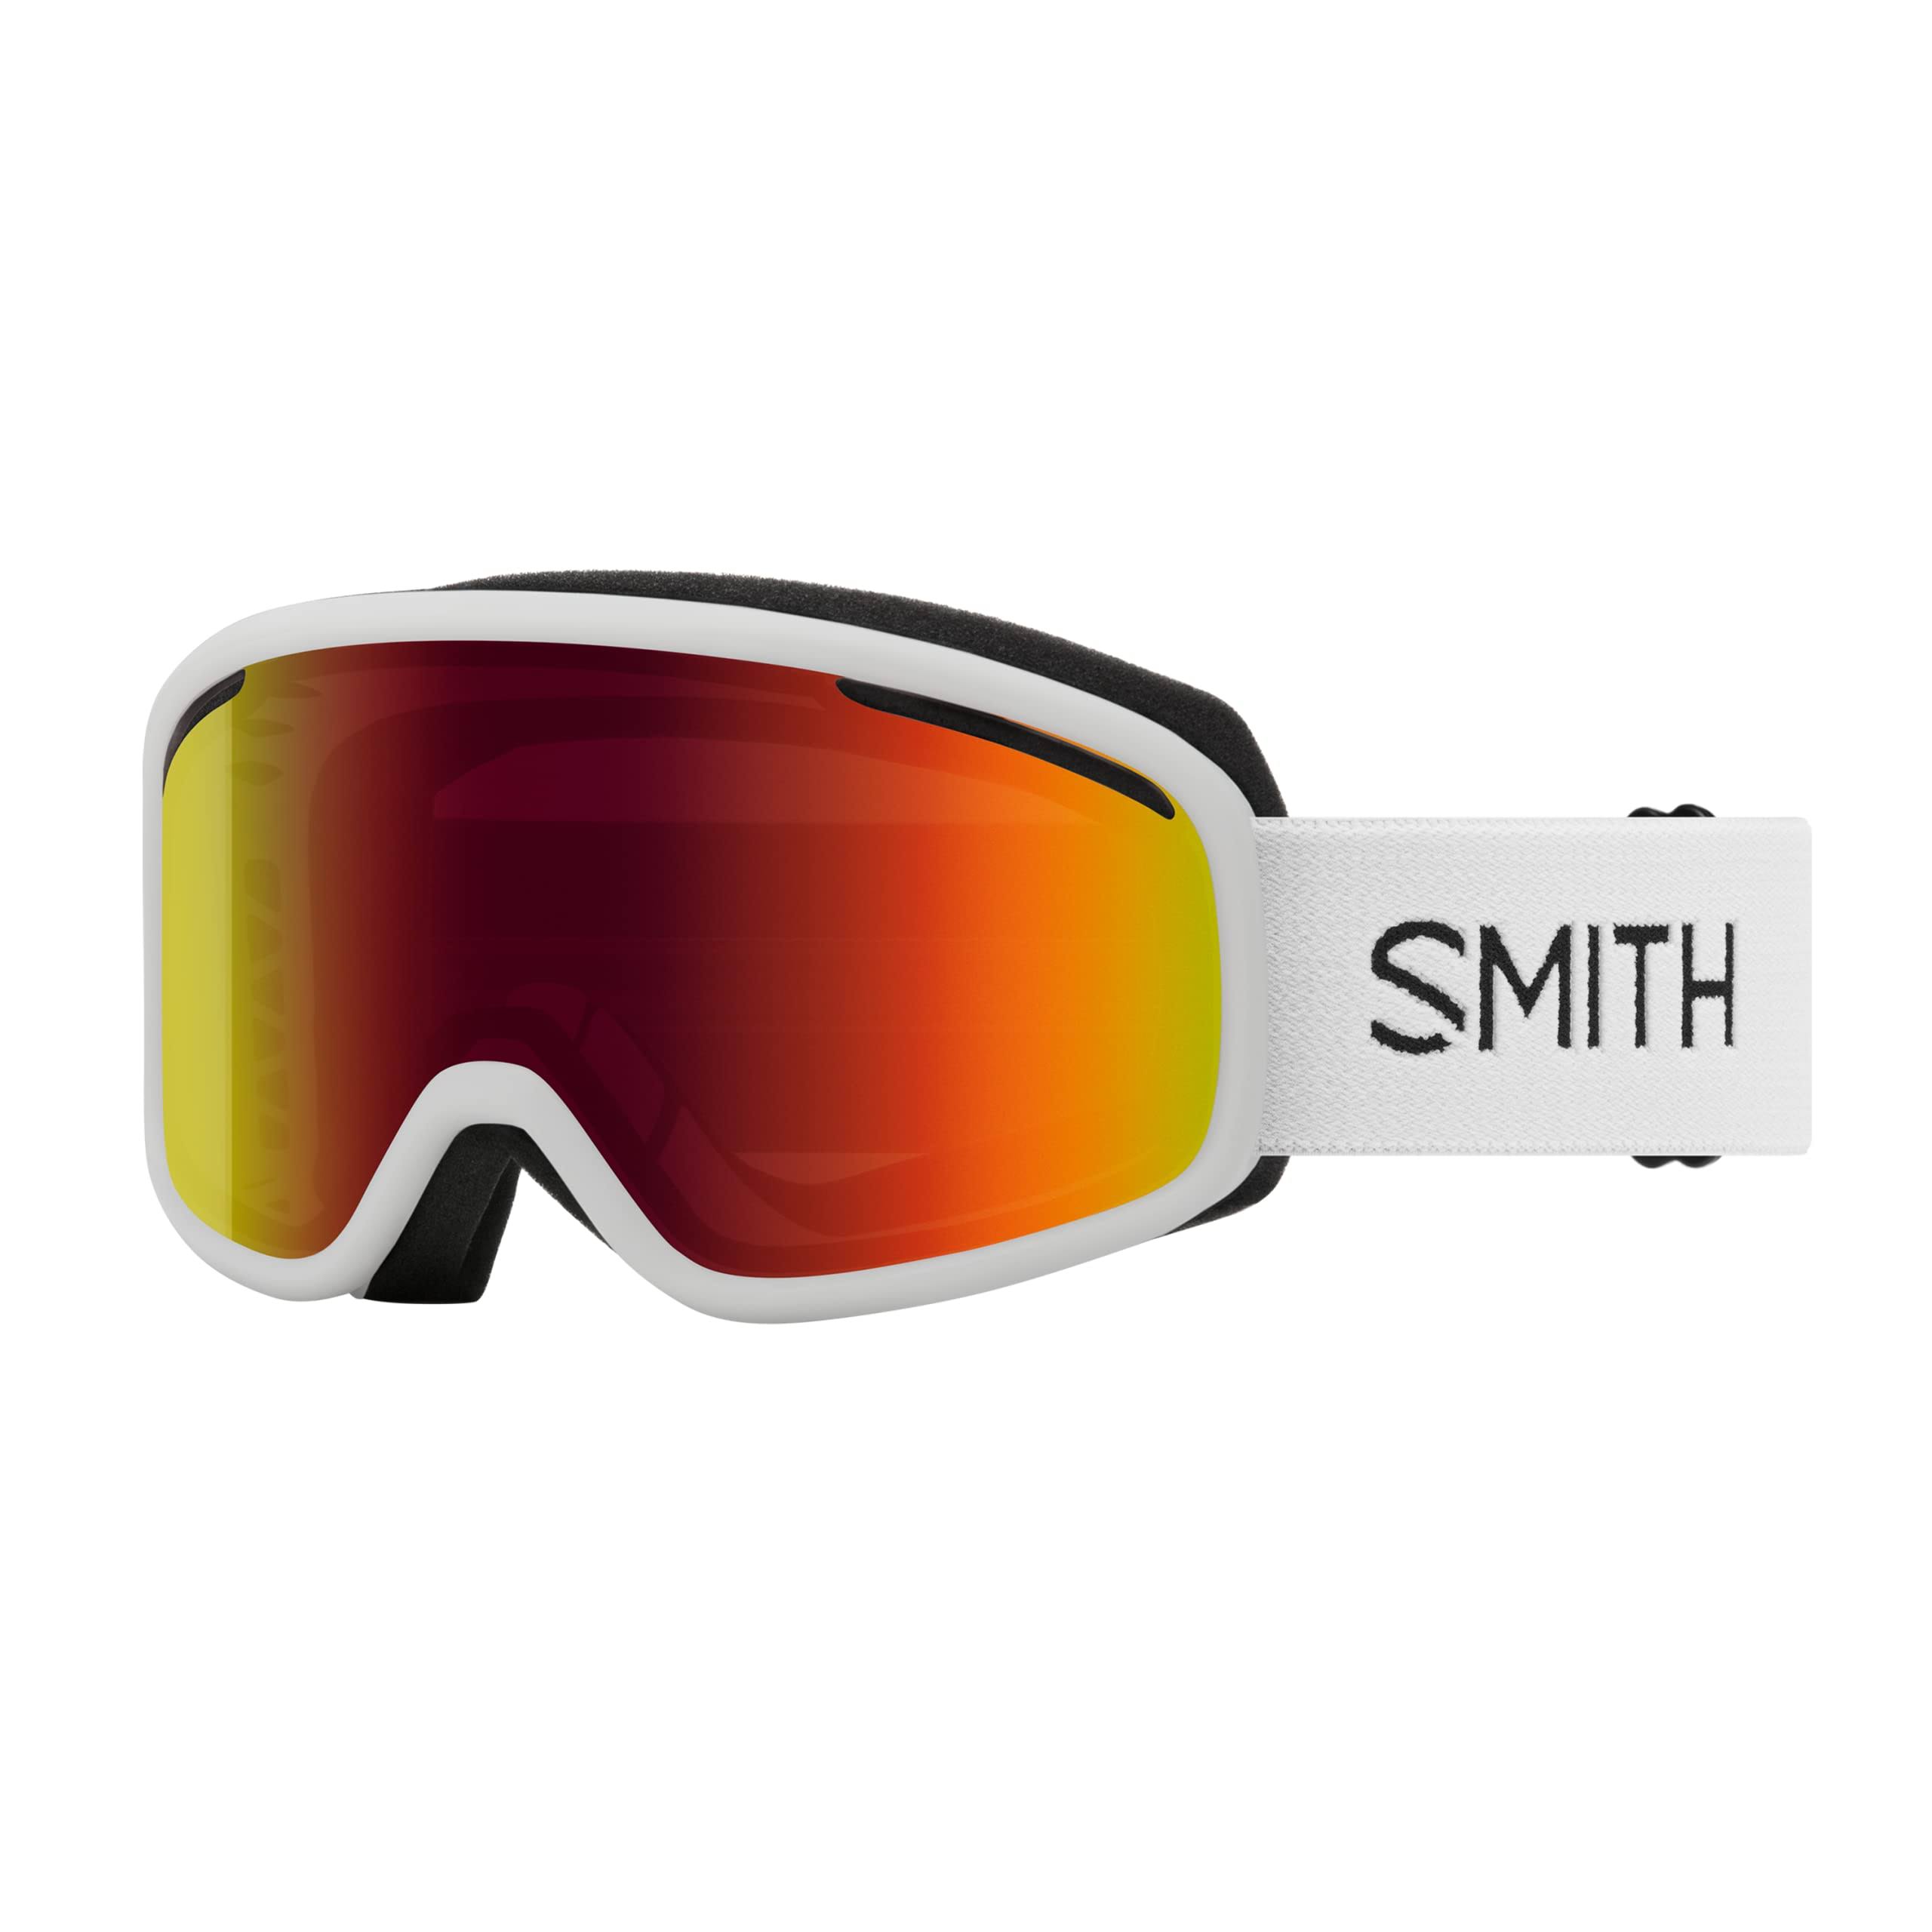 Smith Vogue Ski Goggles, White / Red Sol-X Mirror